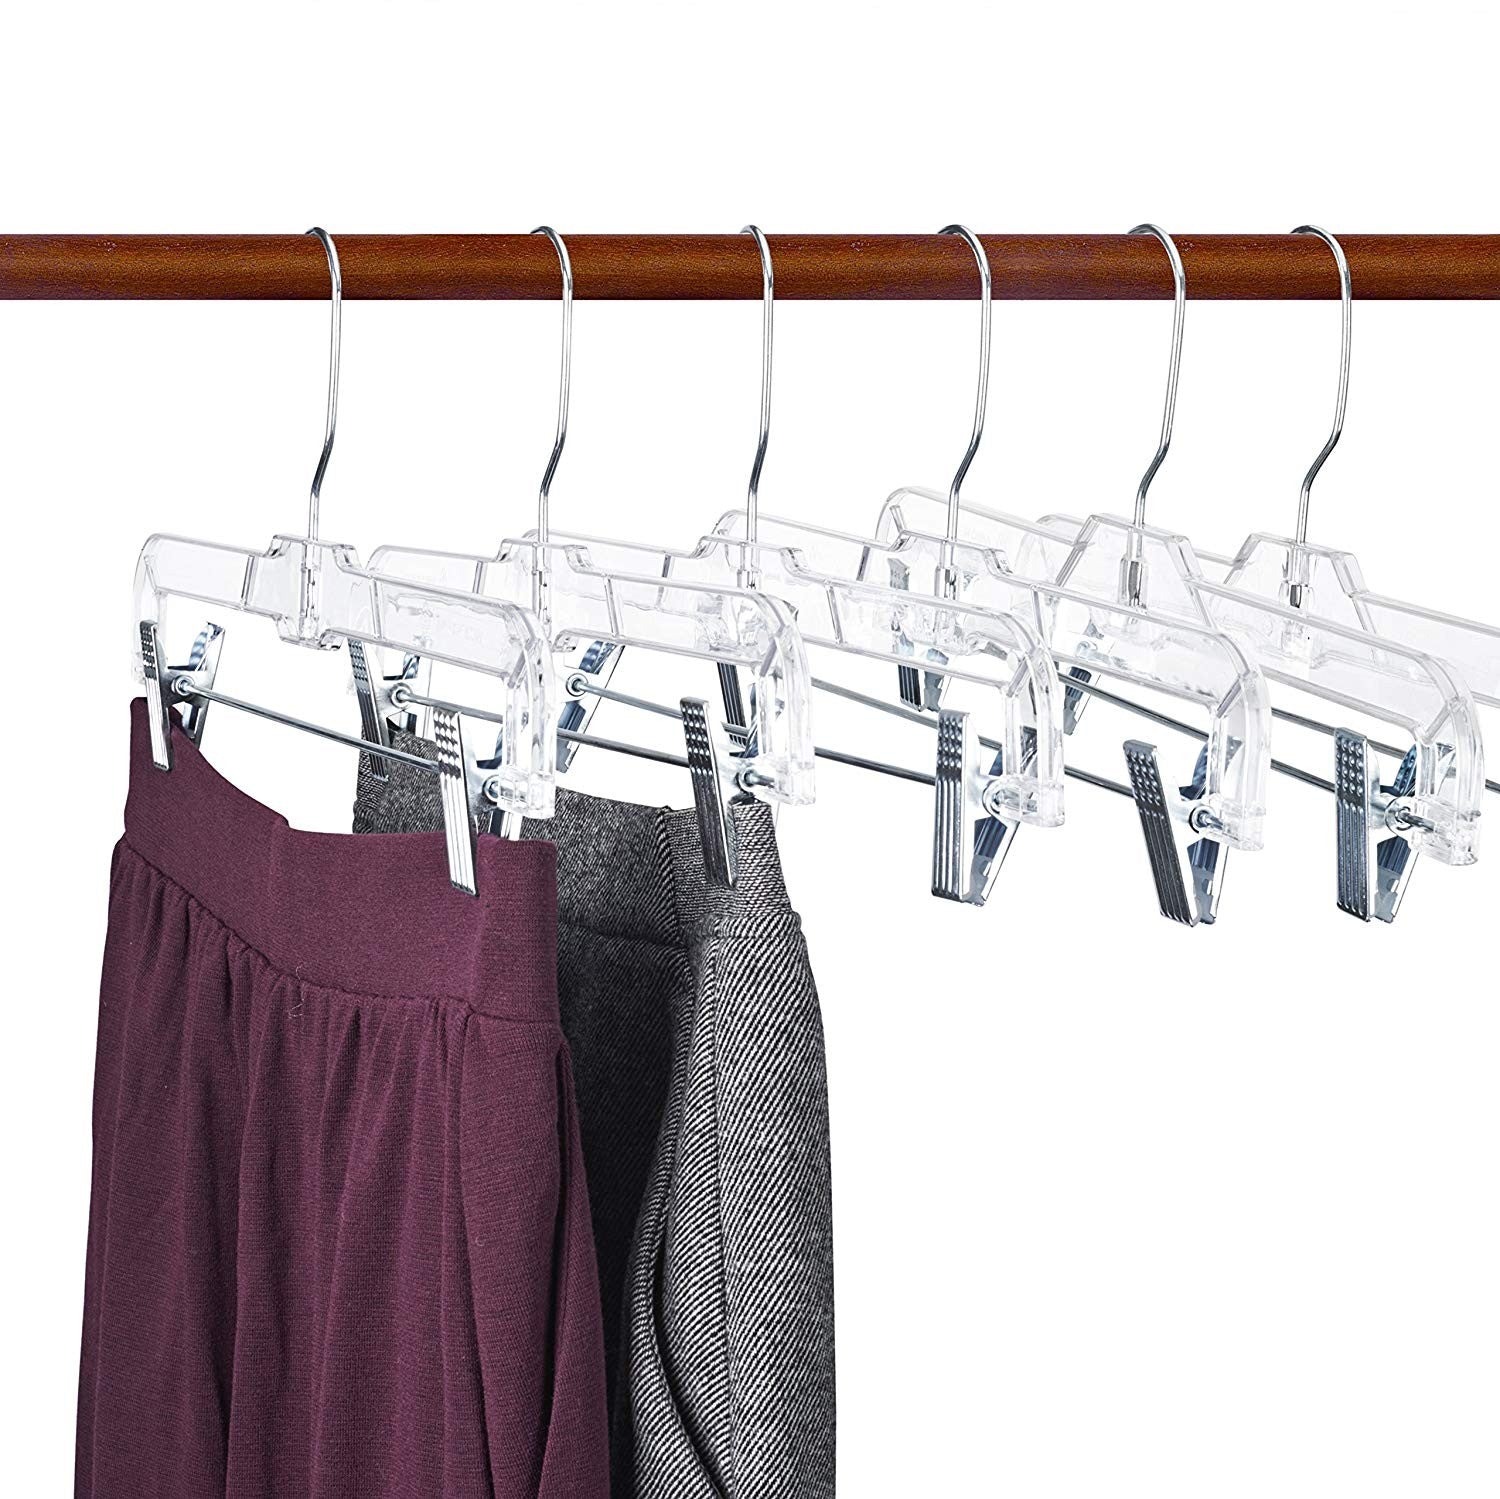 Polished Chrome Metal Pant Skirt Hanger - 14 For Sale